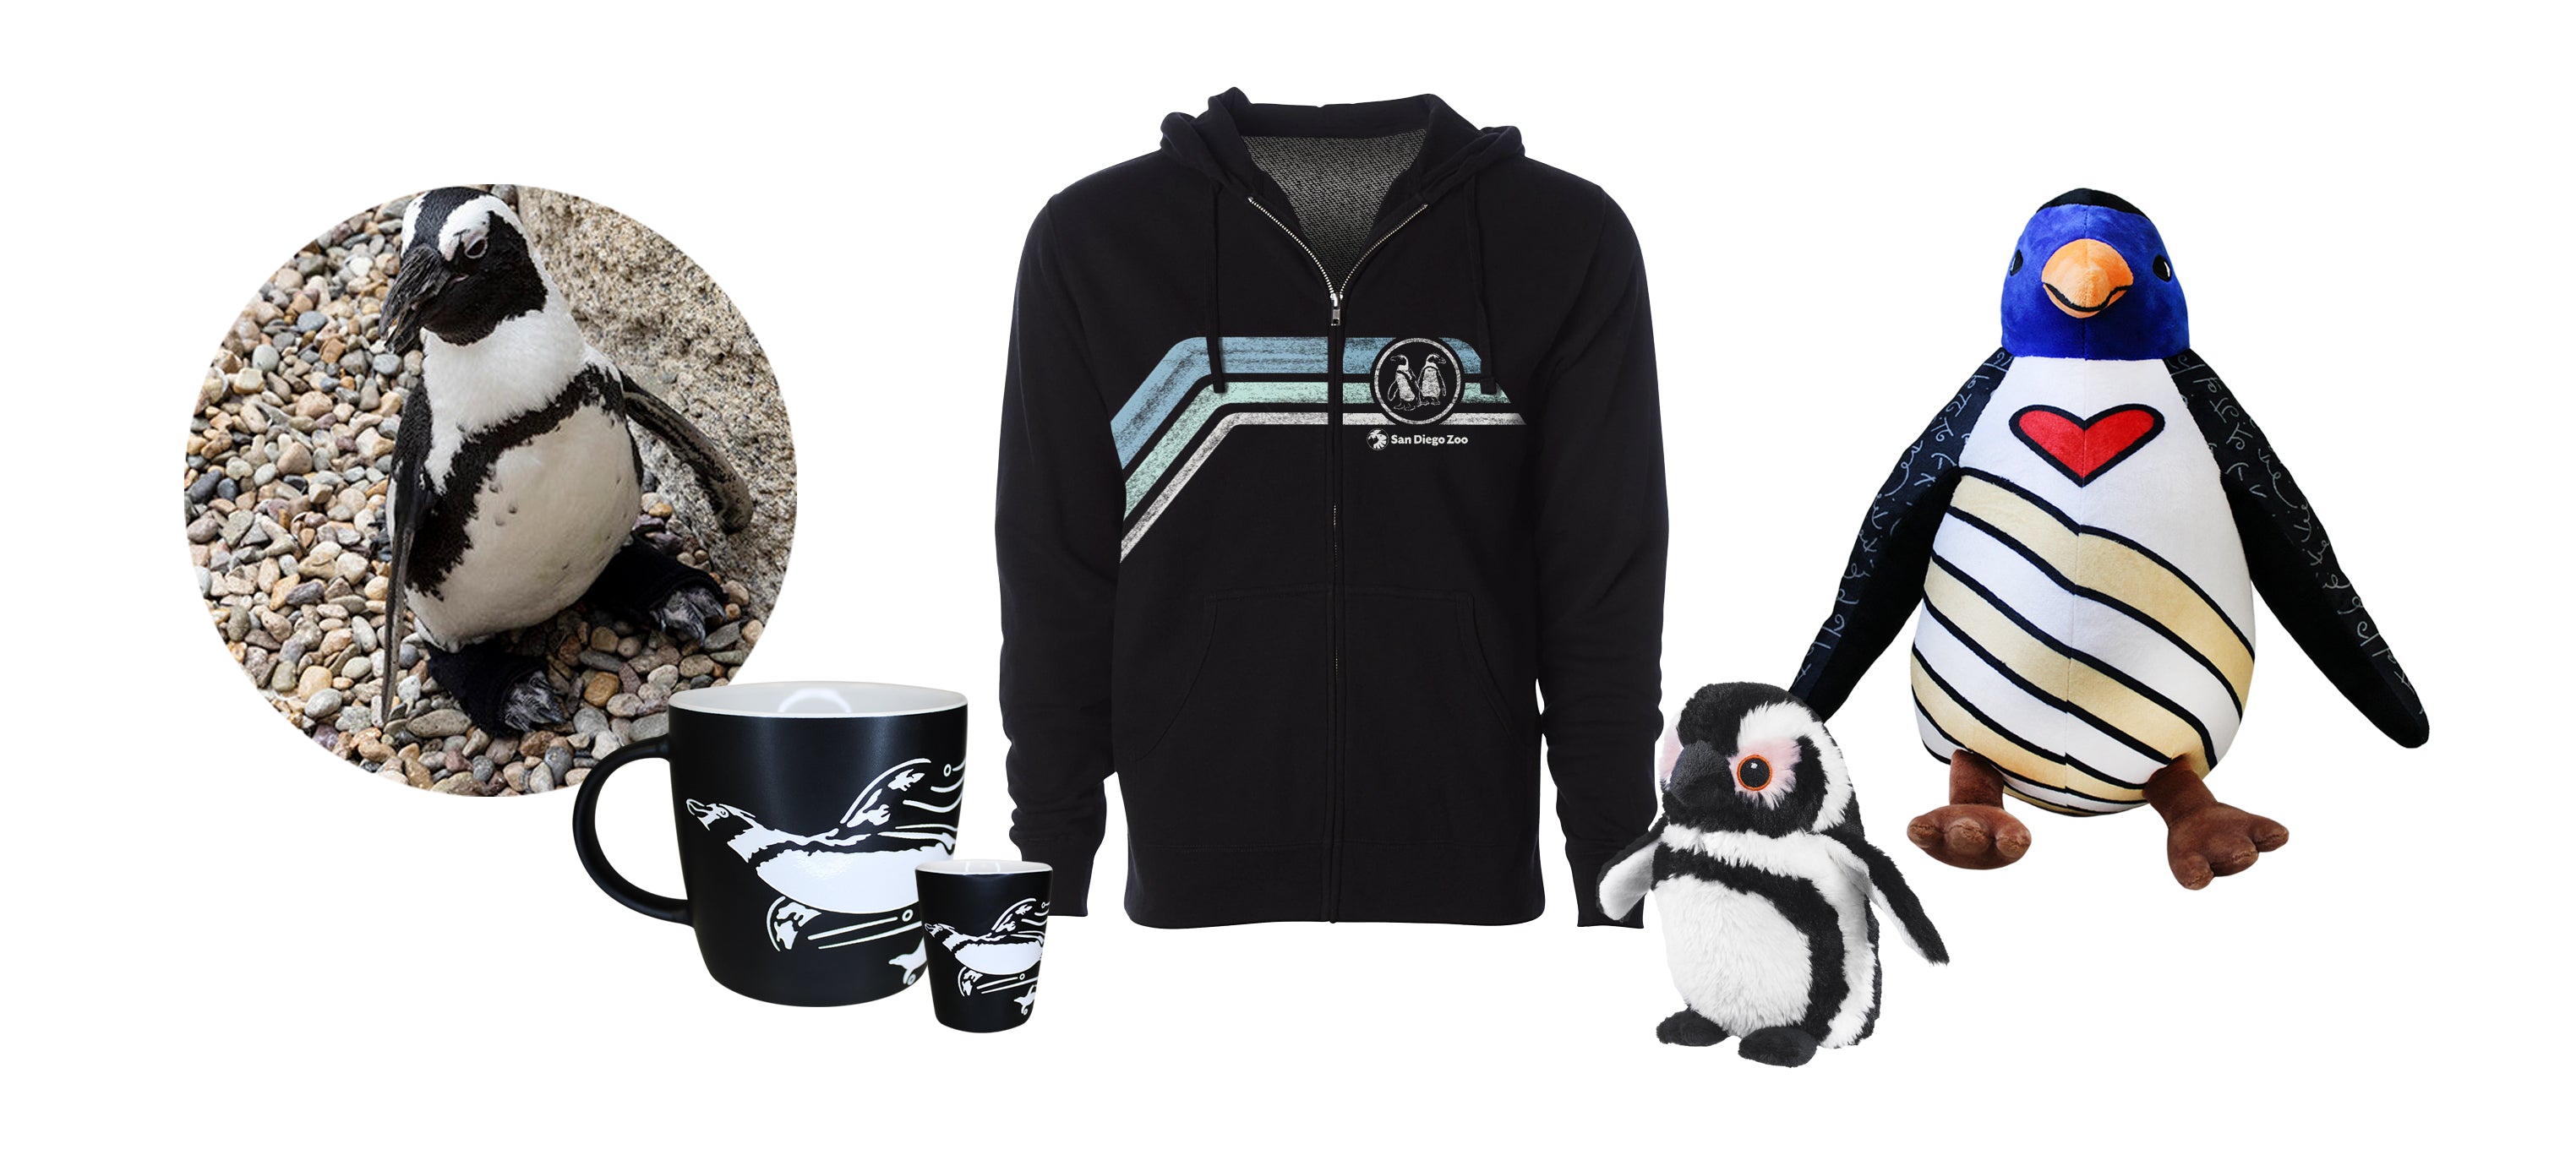 Penguin Merchandise